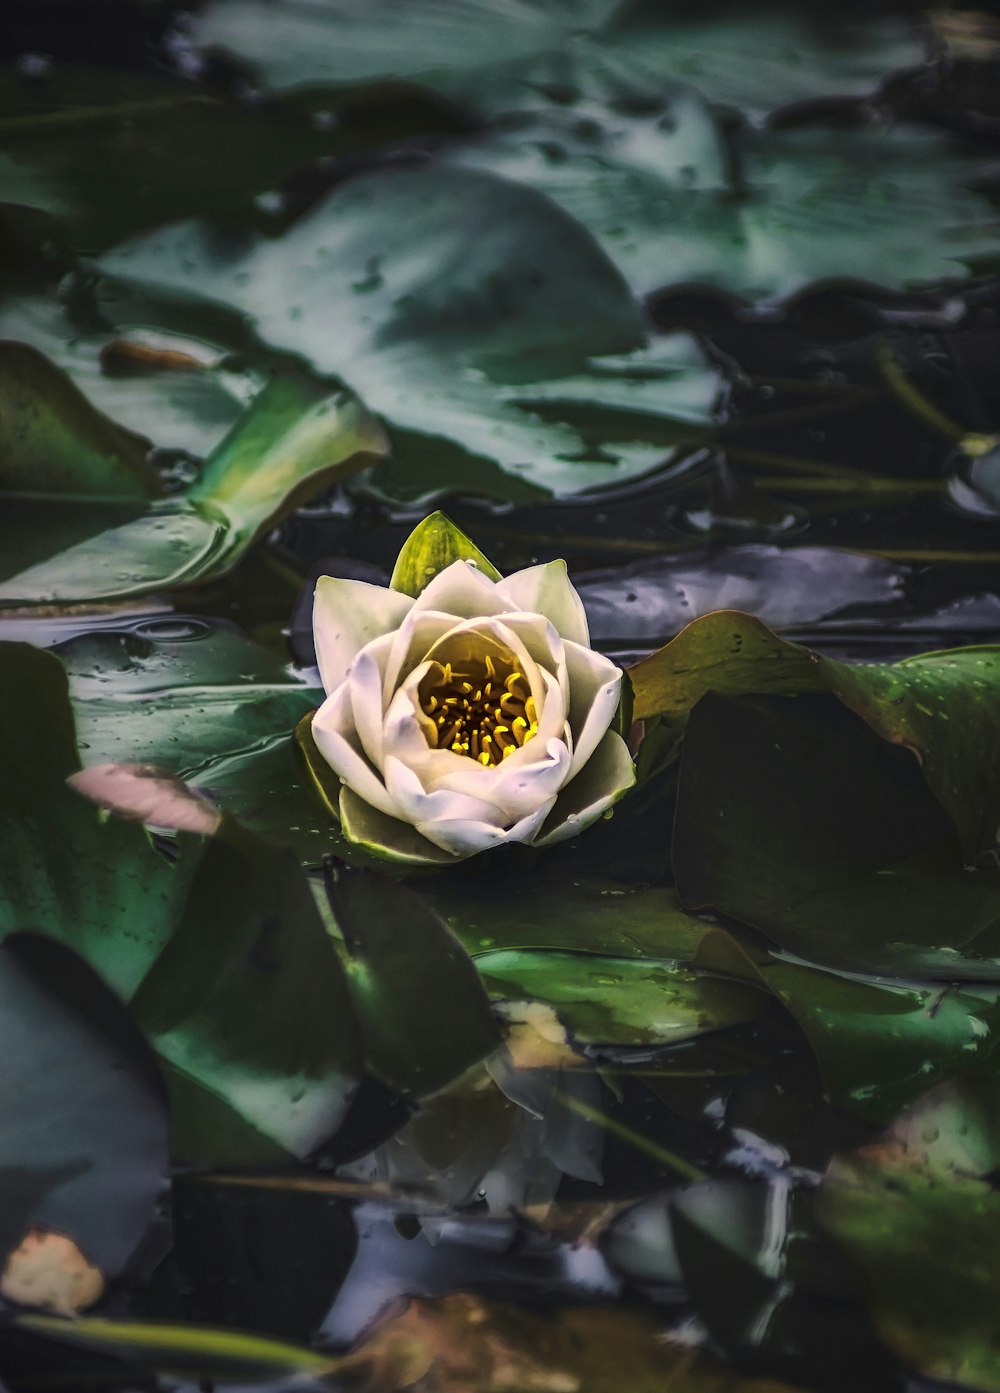 fiore di loto verde sull'acqua